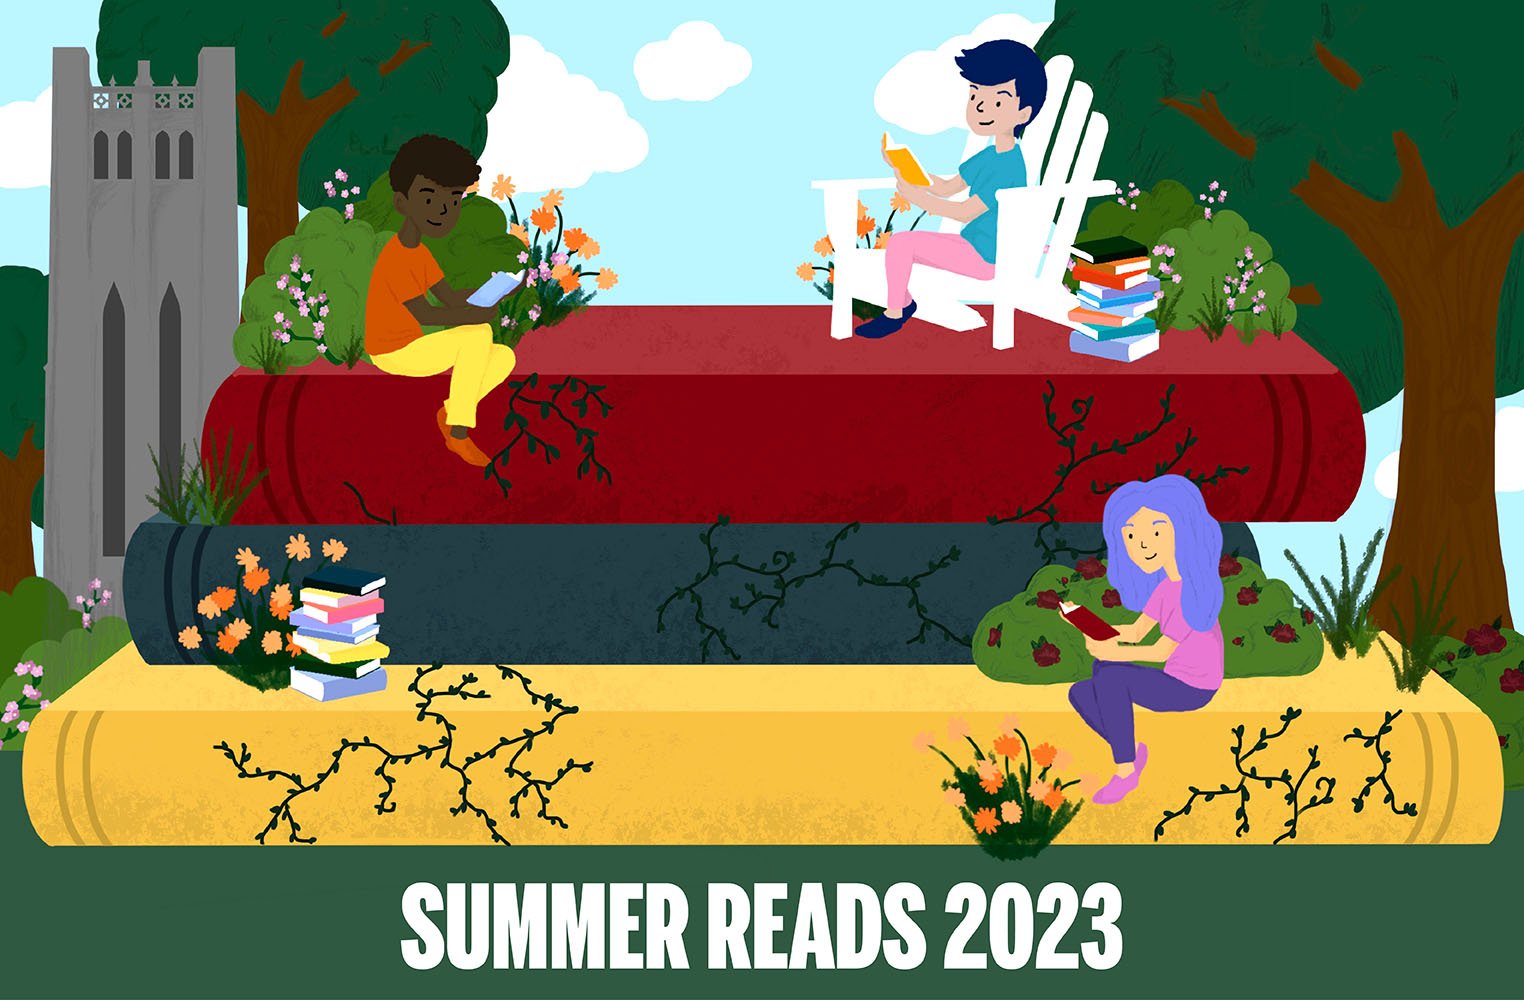 Summer Reads 2023